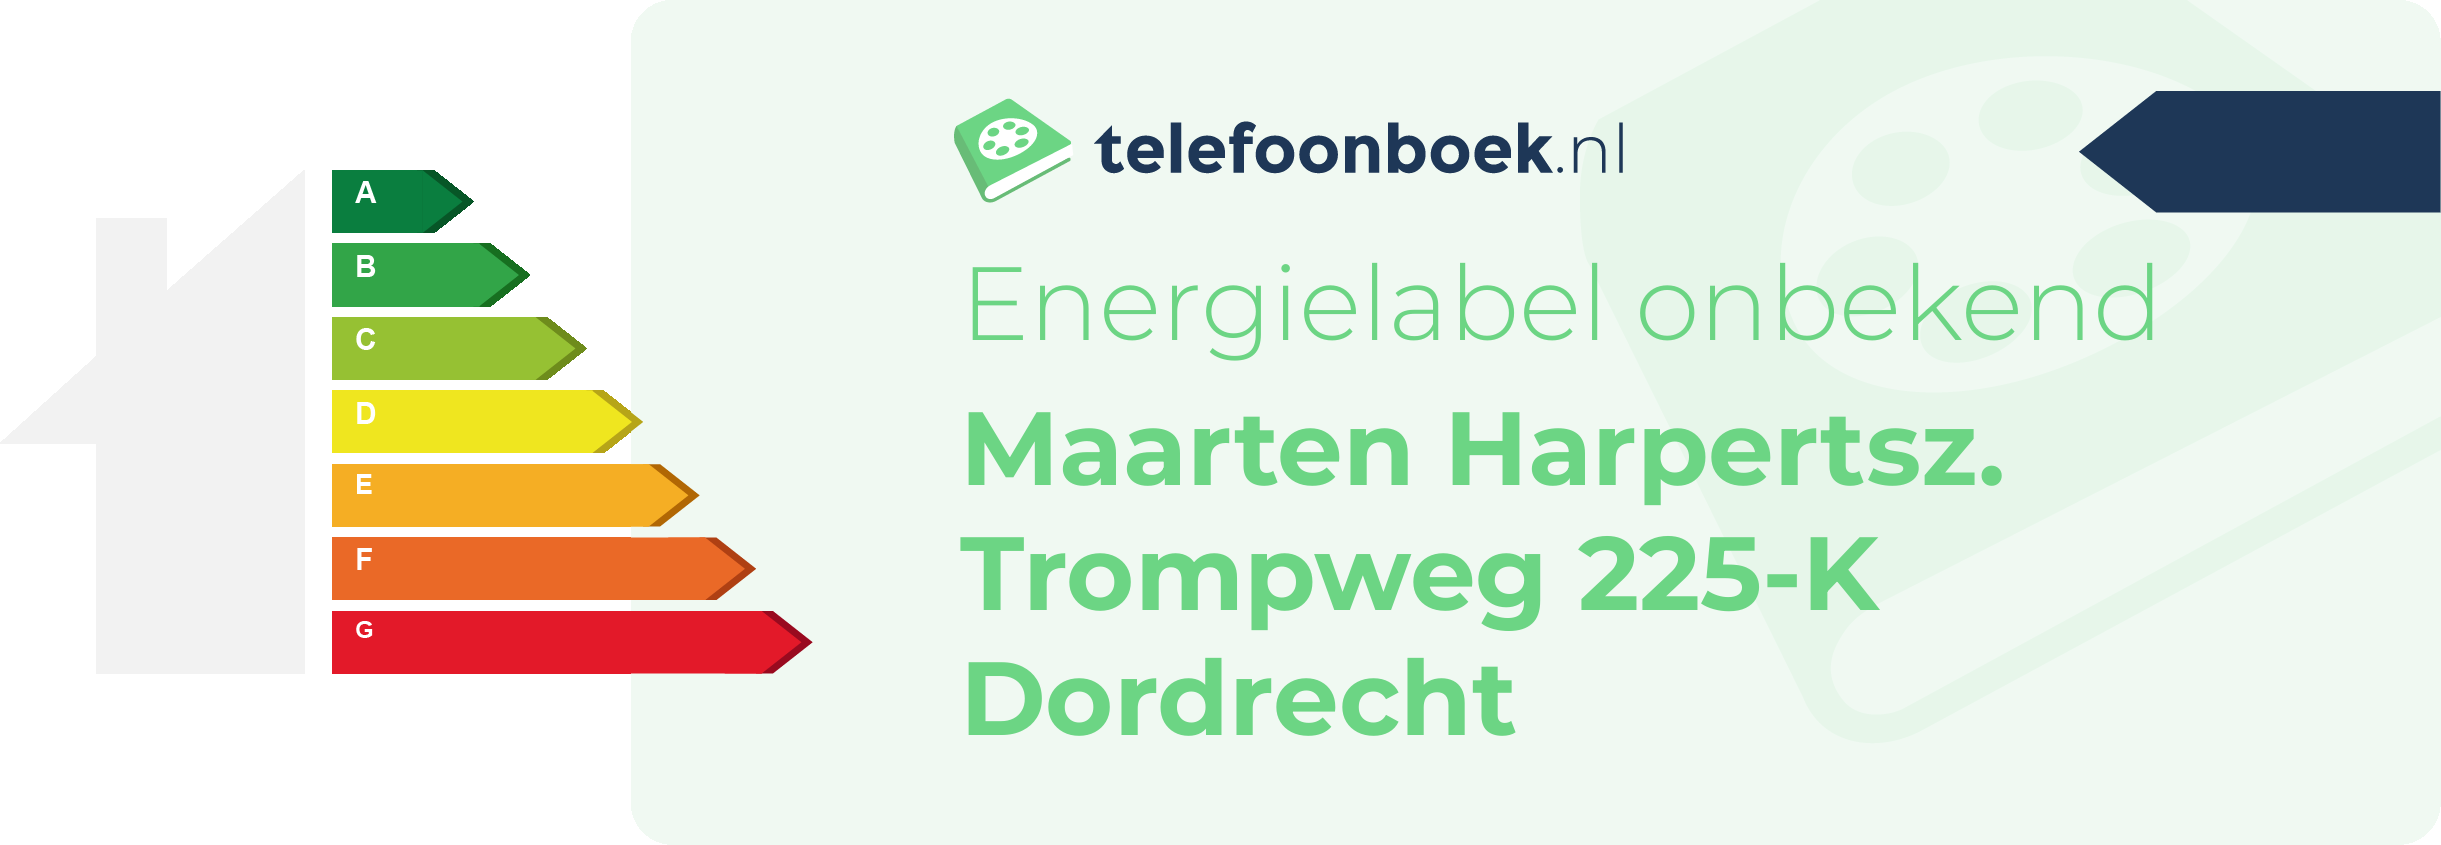 Energielabel Maarten Harpertsz. Trompweg 225-K Dordrecht